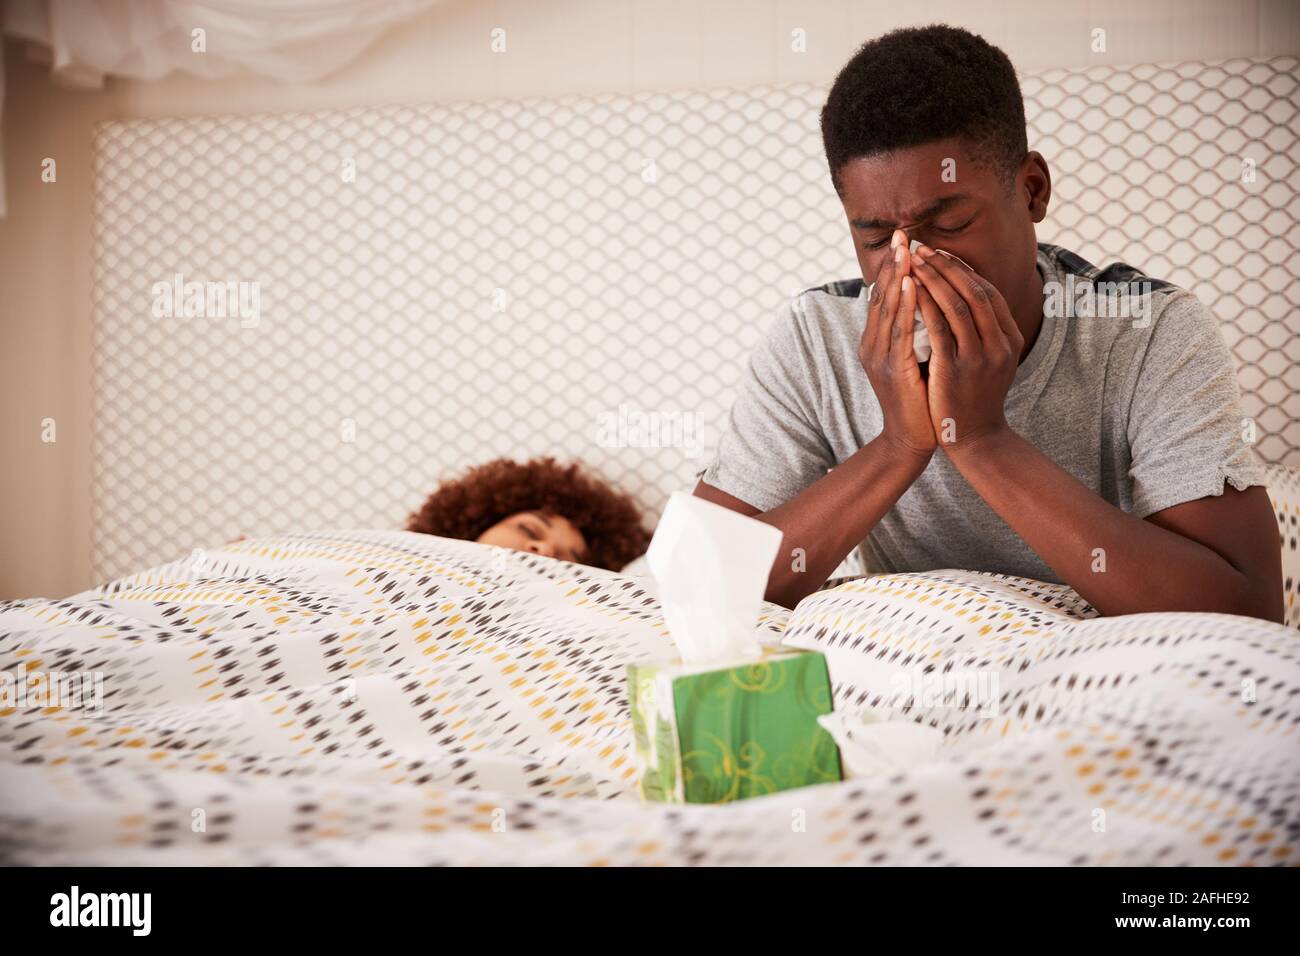 African American man millénaire s'asseyant sur son lit, tandis que son nez de soufflage pour partenaire, Close up Banque D'Images